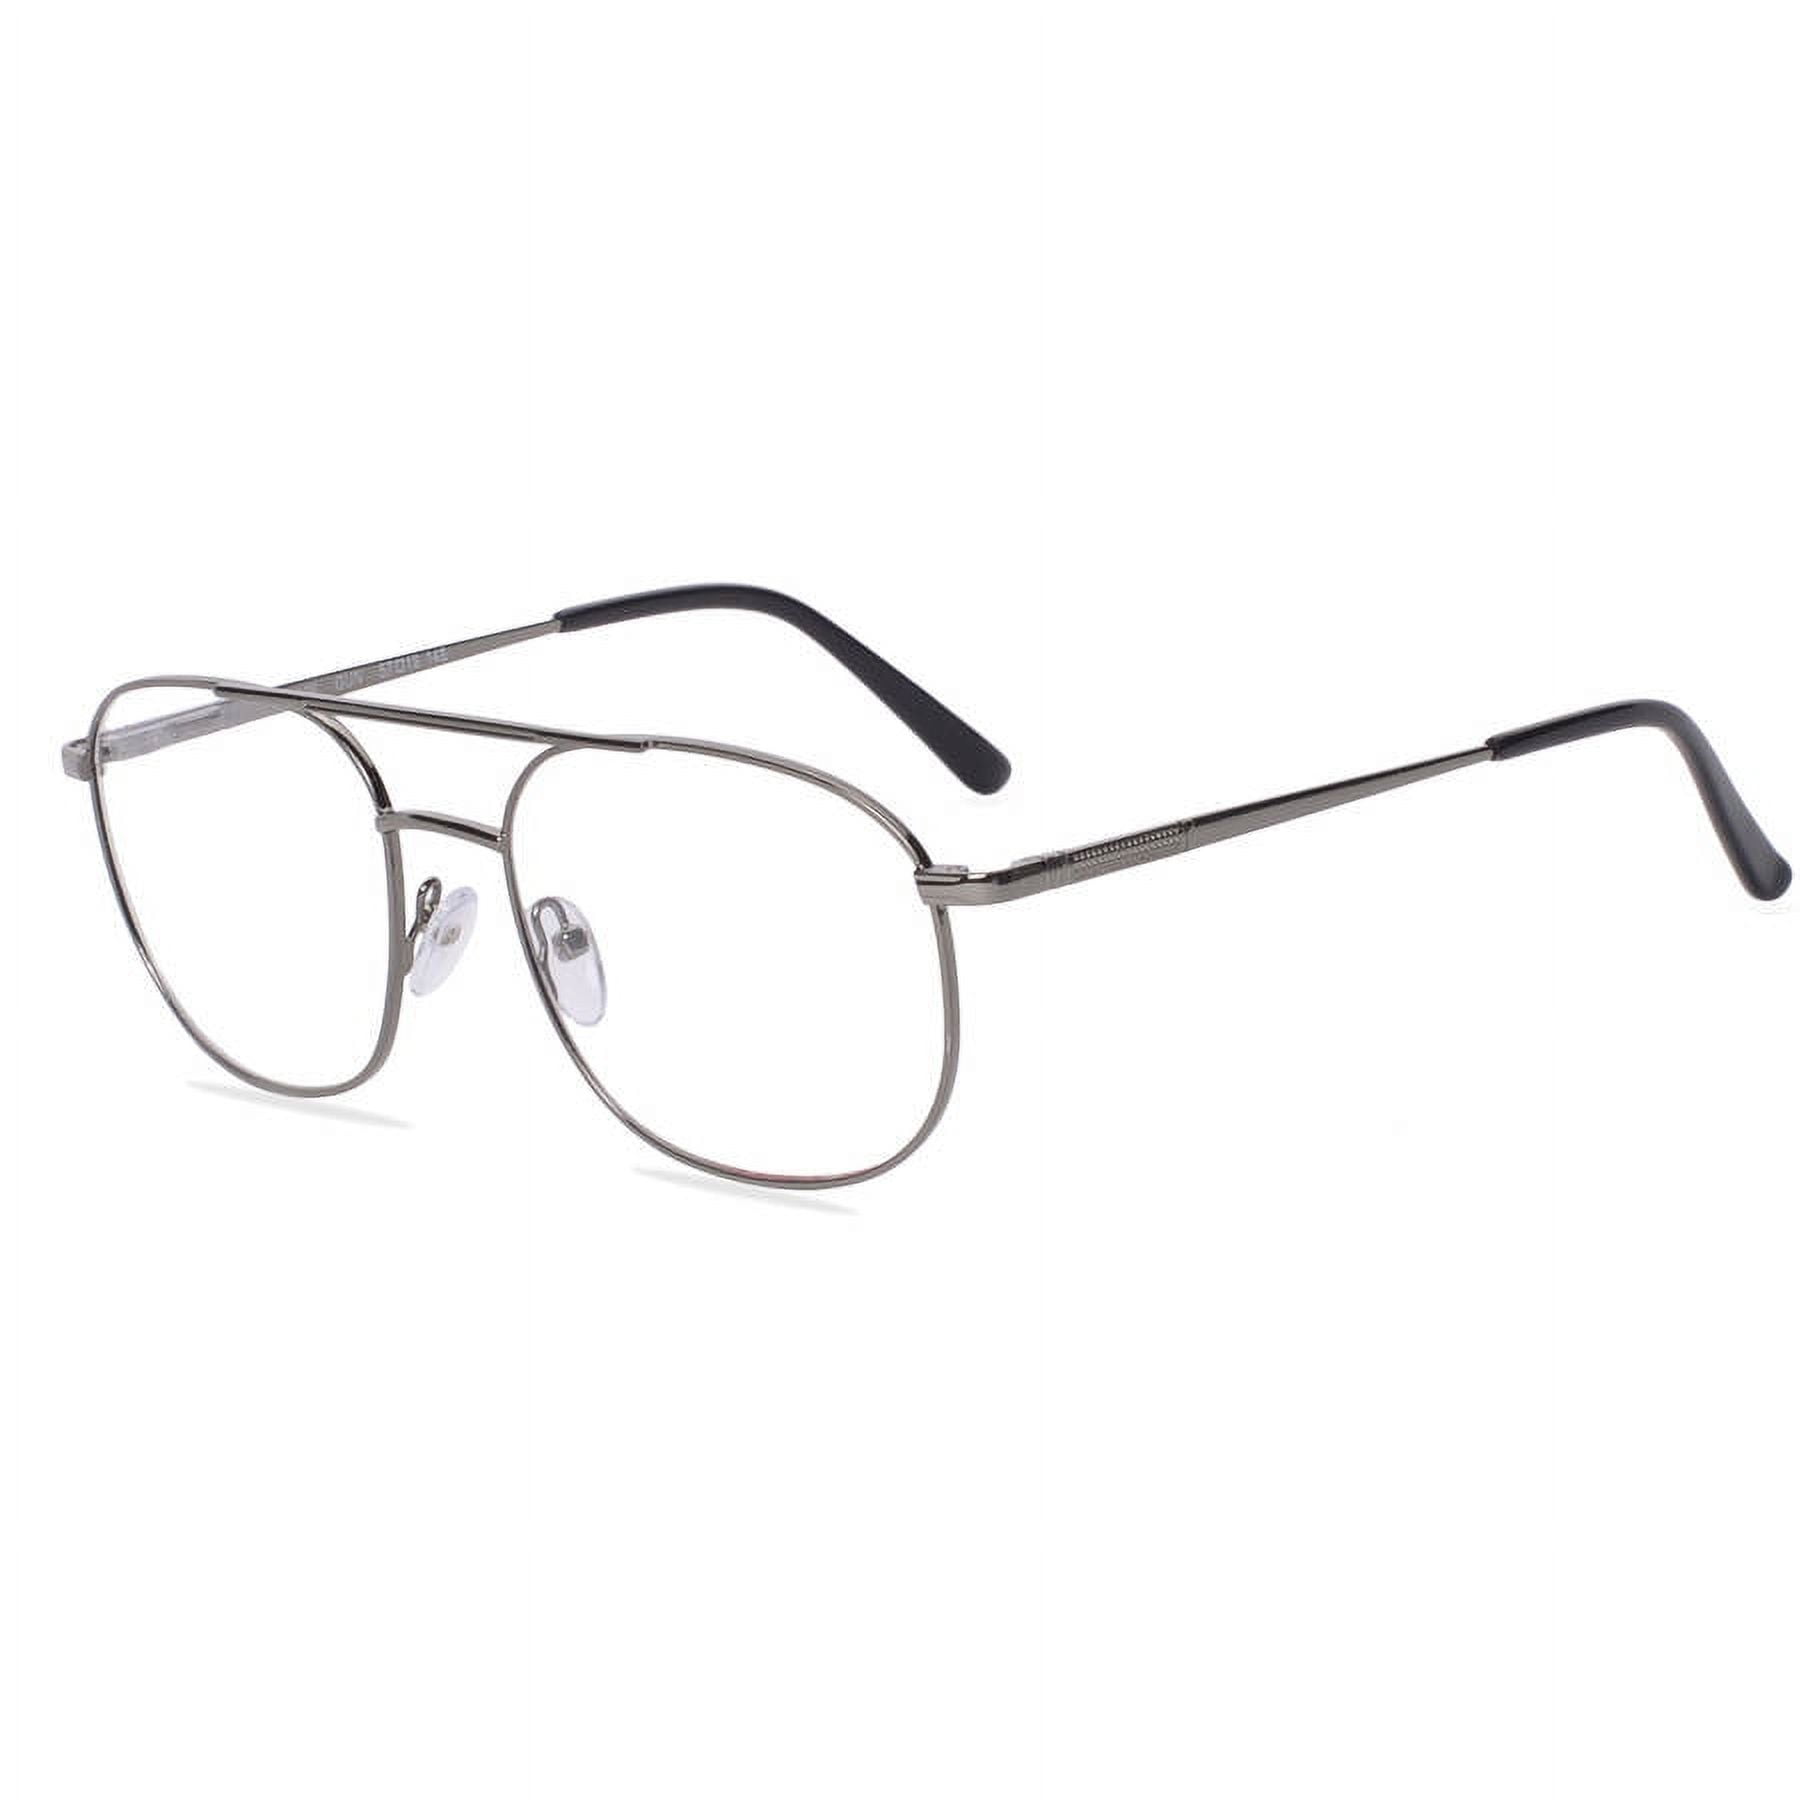 Wrangler Men's Rx'able Eyeglasses, W129 Gunmetal 